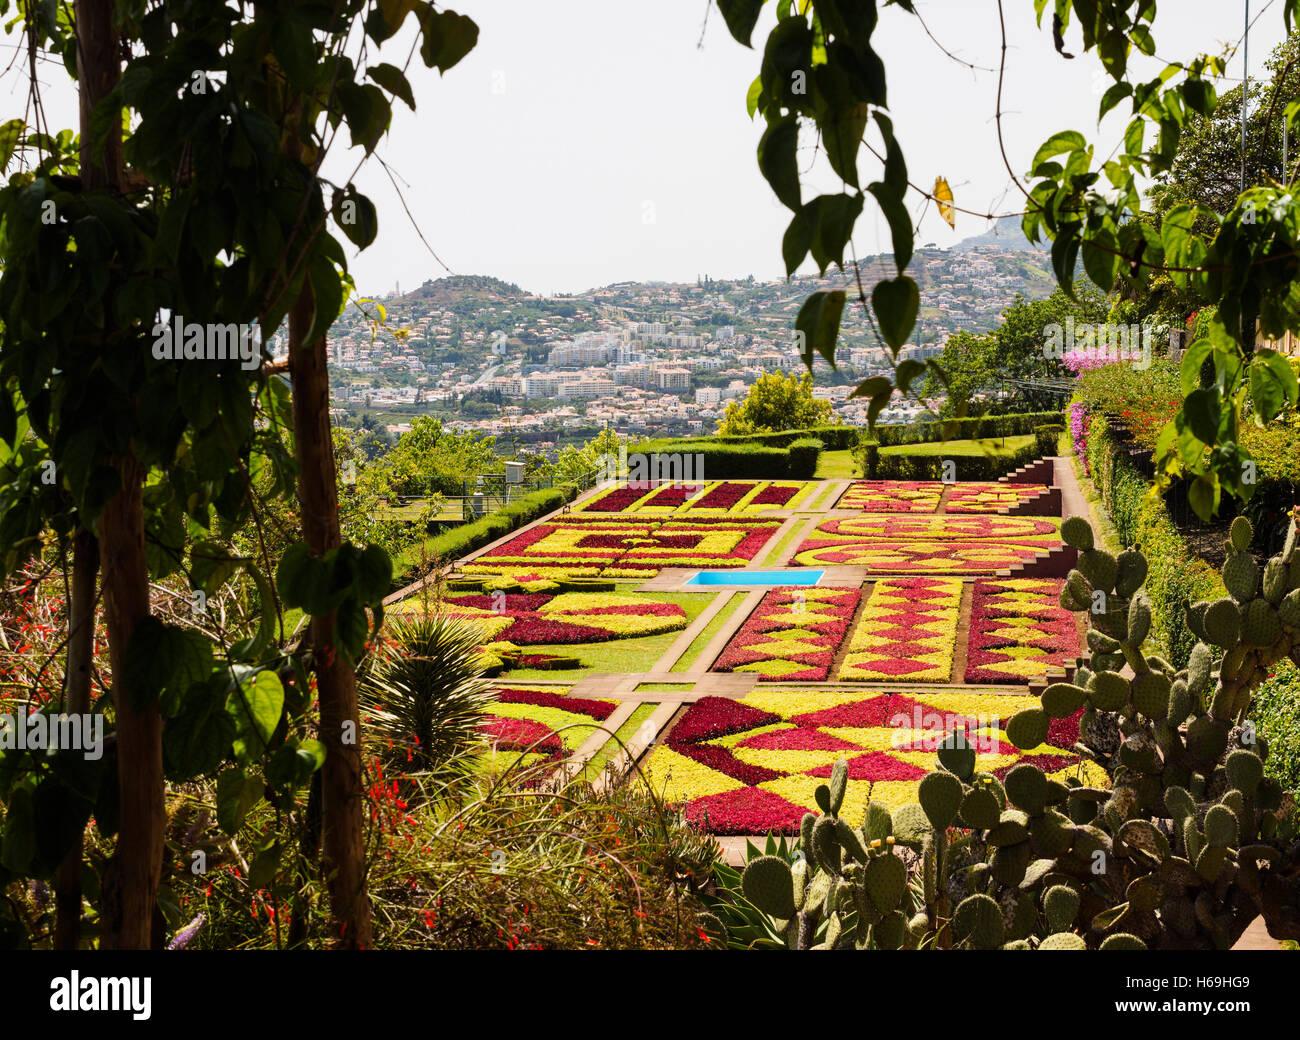 Una vista desde el jardín botánico de Madeira hacia Funchal en el fondo en la isla portuguesa de Madeira. Foto de stock